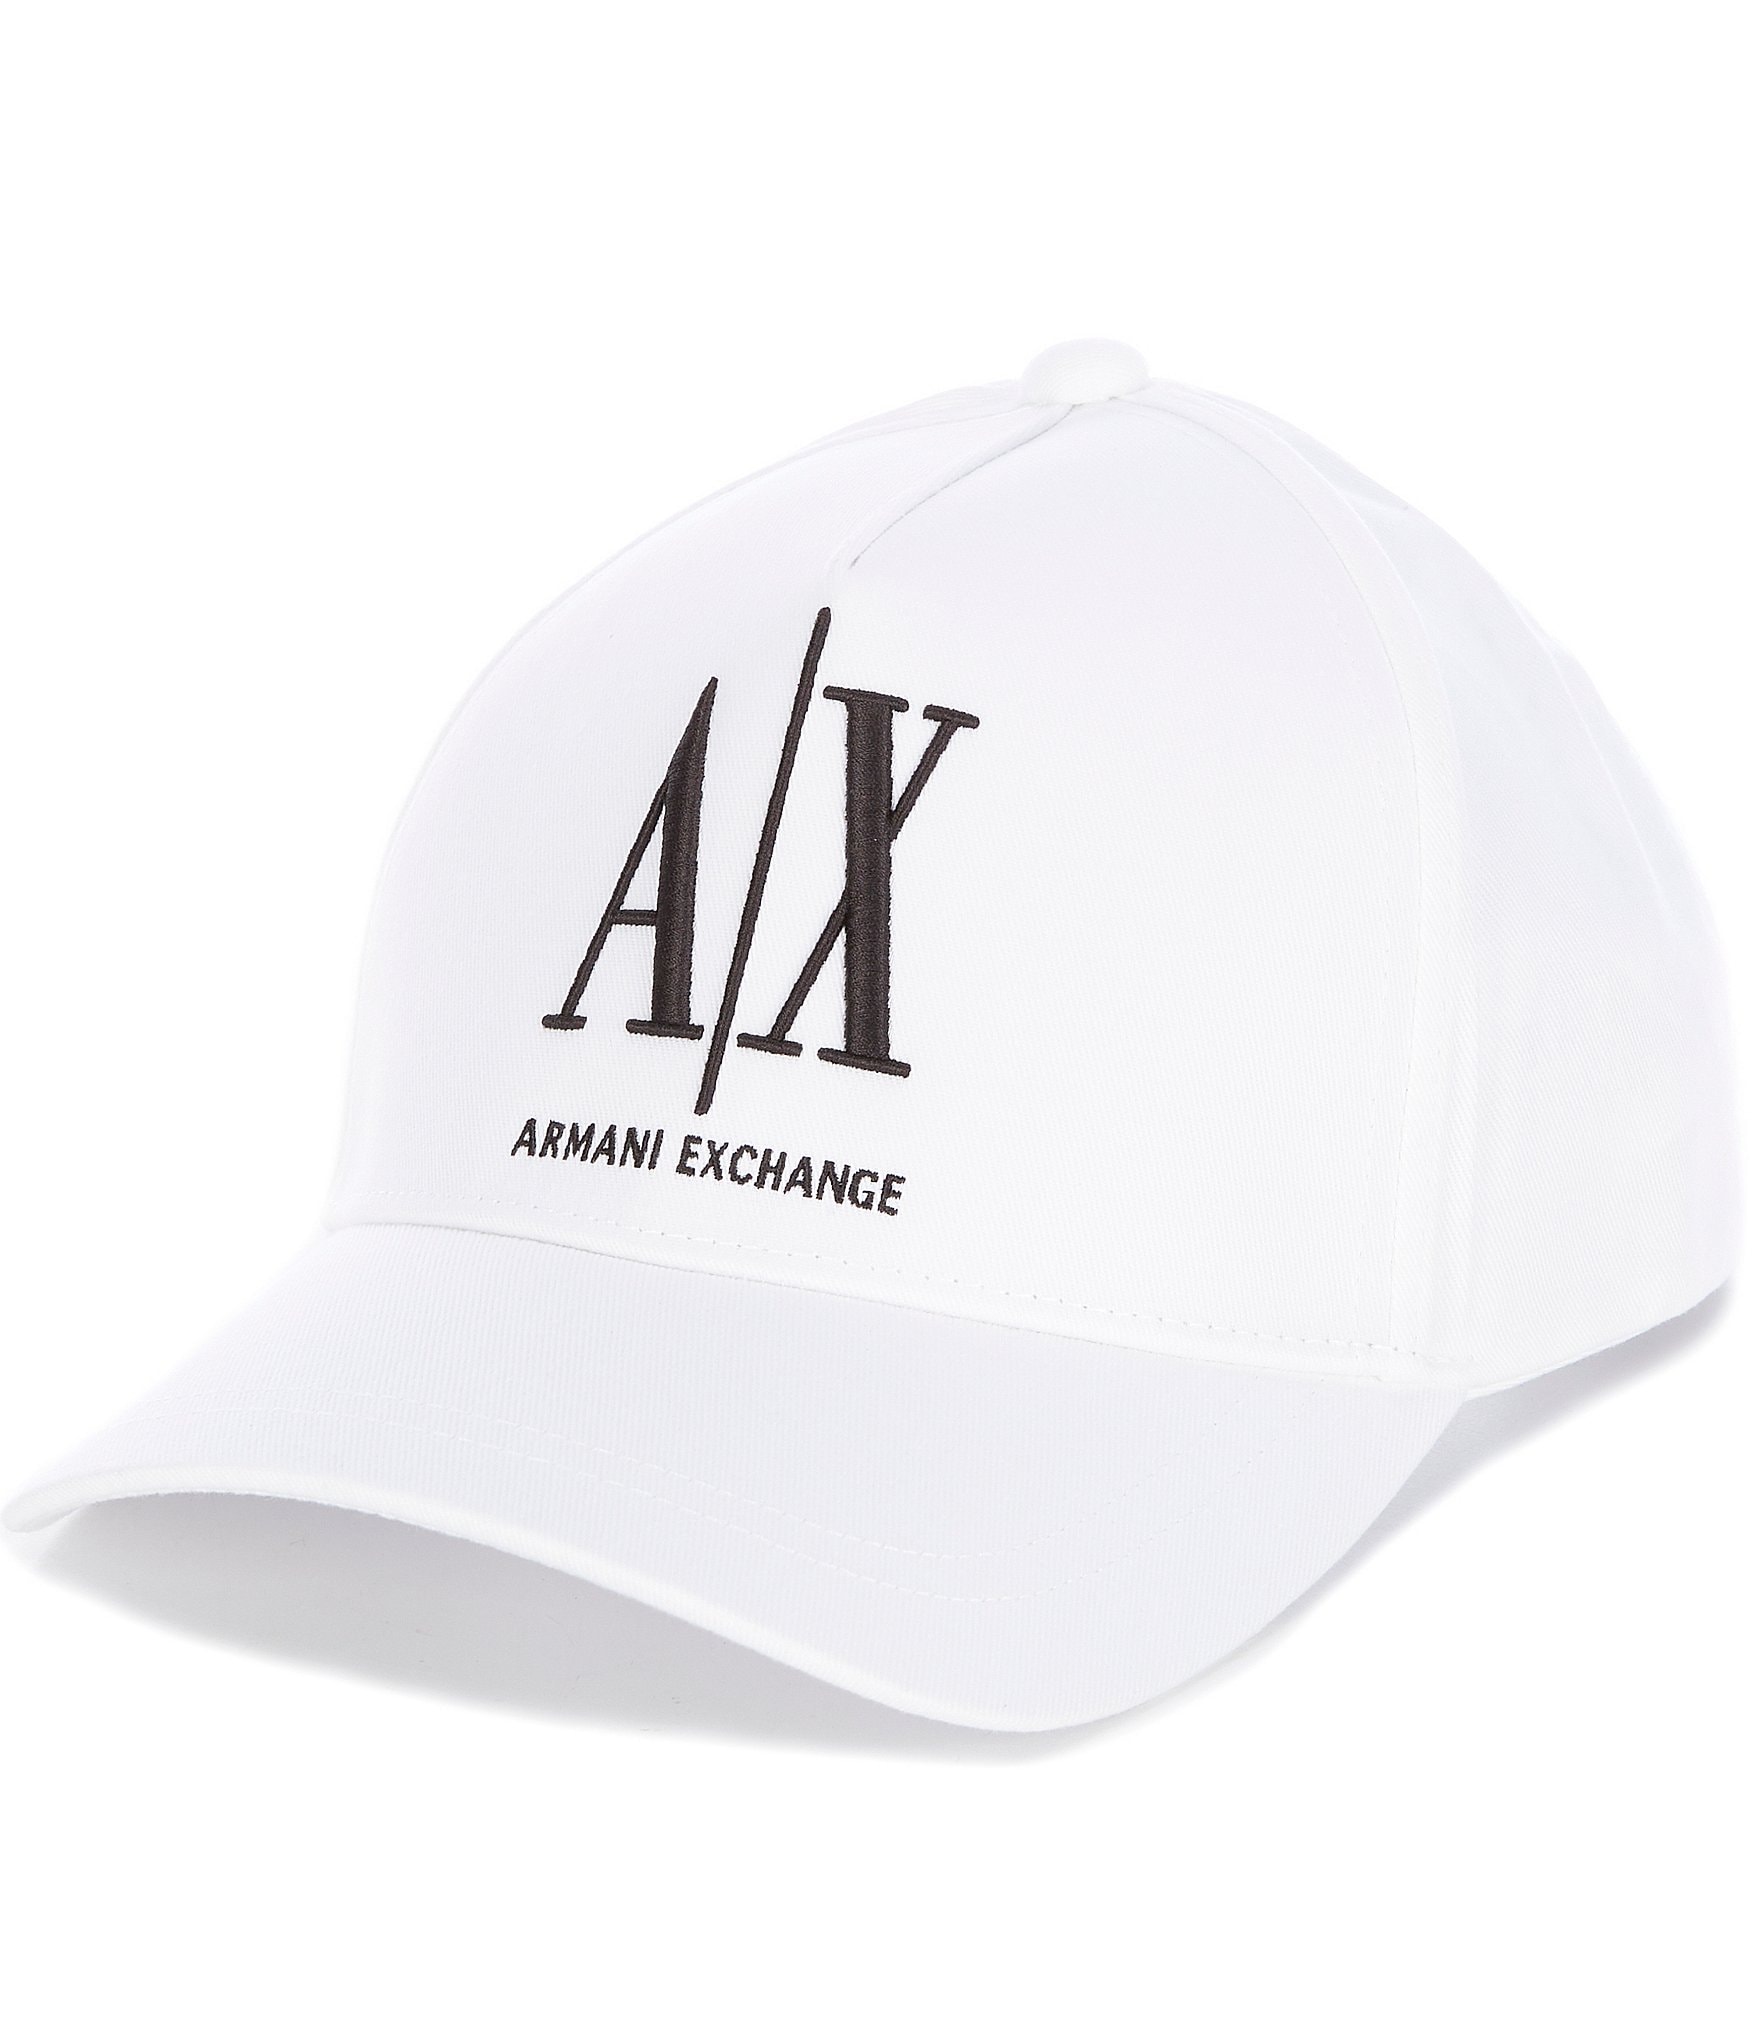 Descubrir 110+ imagen armani exchange hats - Abzlocal.mx